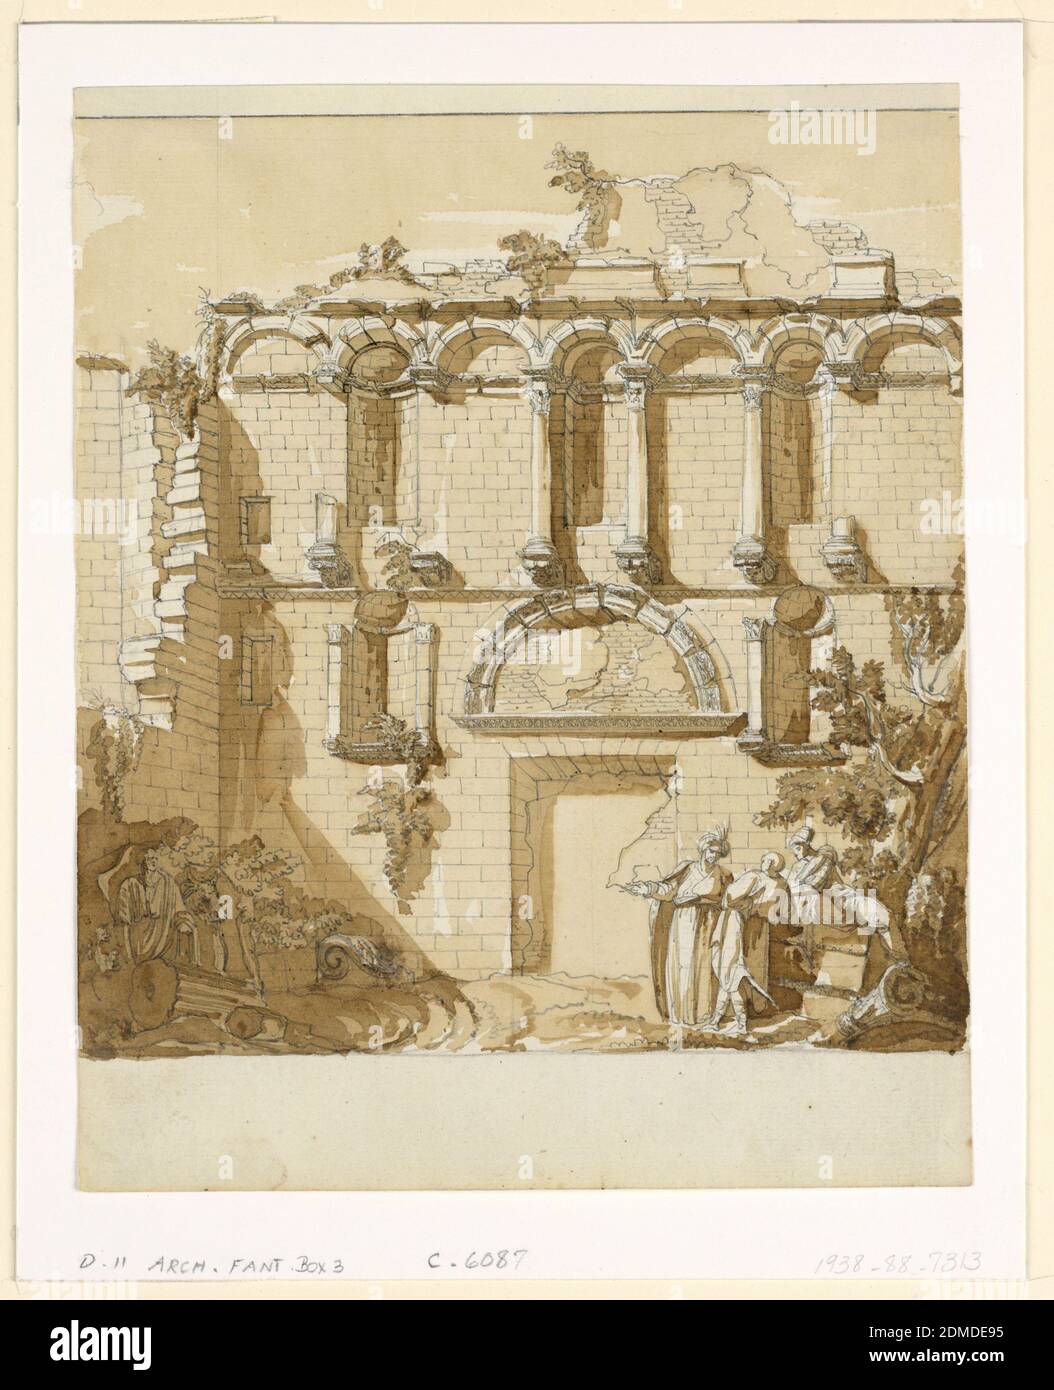 Blick auf die Porta Aurea, Palast von Diokletian, Split, Charles-Louis Clérisseau, Französisch, 1721 – 1820, Stift und braune Tinte, Pinsel und gelb-braun waschen, Graphit auf Papier, Wandhöhe, in Ruinen. Der untere Teil der Wand enthält eine ummauerte Tür, zwei kleine Nischen, die auf beiden Seiten der Tür platziert, und einen halben Bogen über der Tür. Der obere Teil der Wand enthält eine blinde Arkade mit drei Nischen und teilweise zerstörten Entablatur. Nur drei Säulen sind noch intakt. Auf dem Boden stehen drei männliche Figuren rechts vom Eingang. Stockfoto